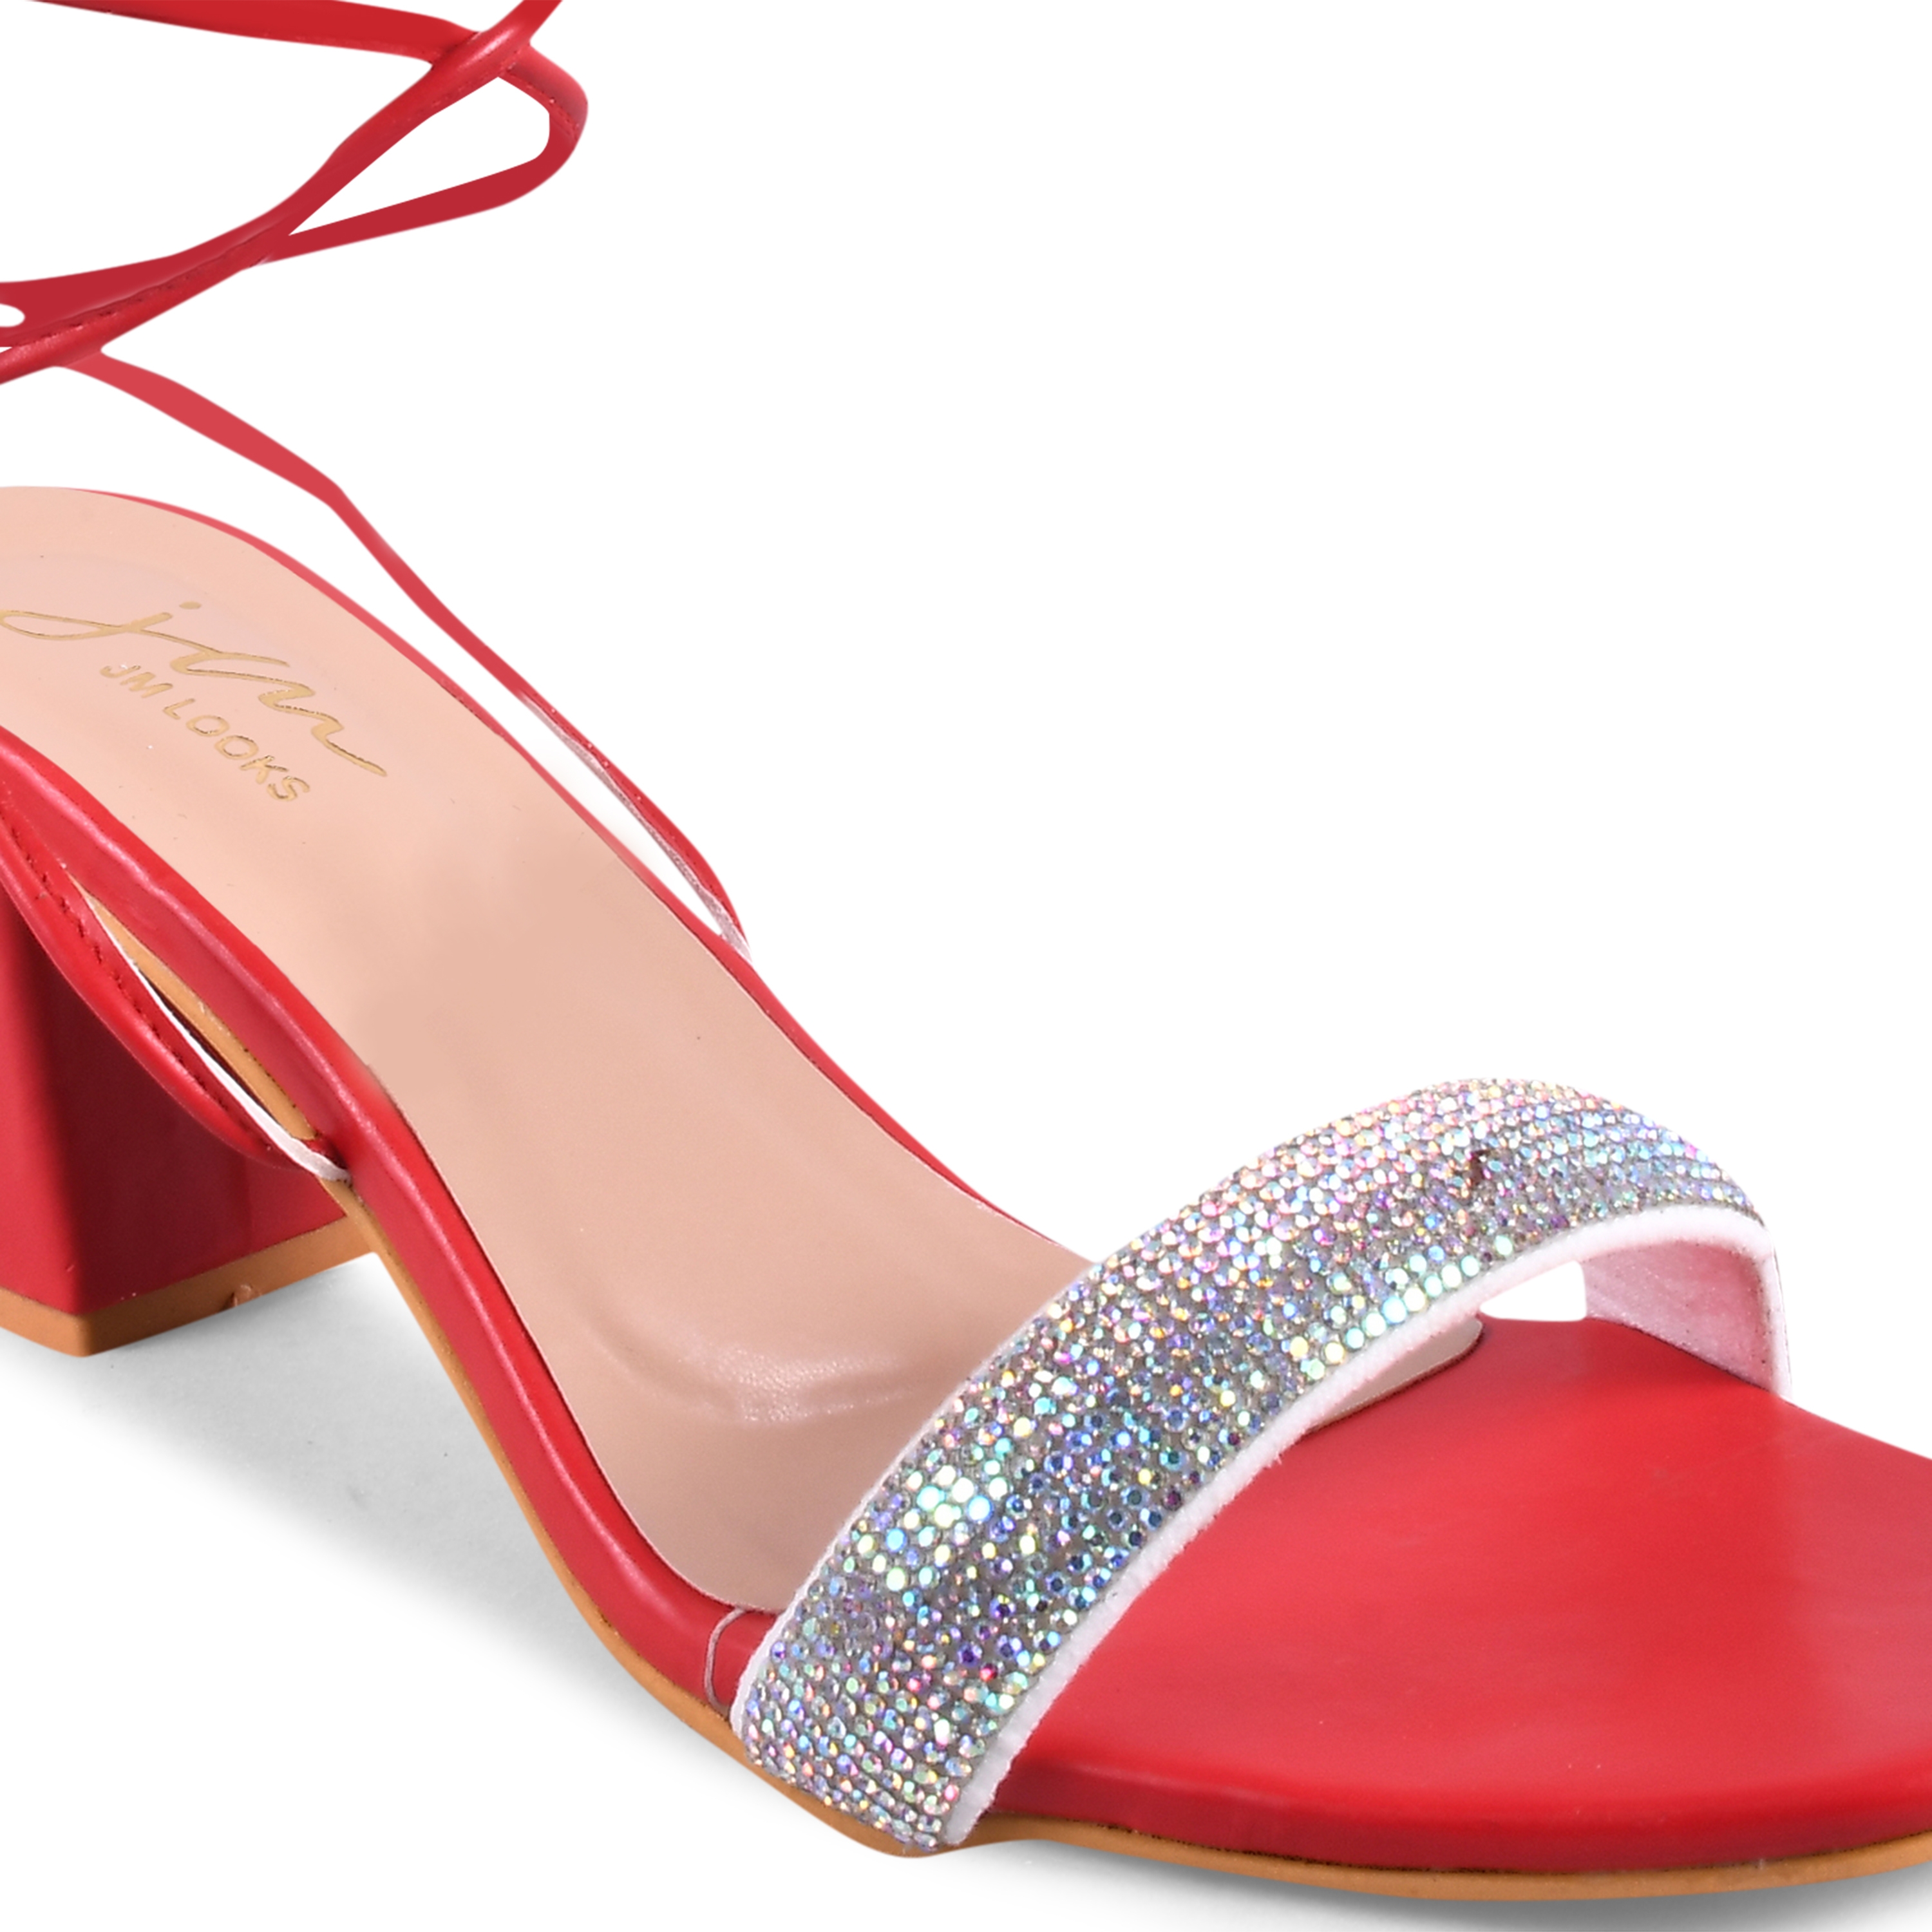 Buy Stylestry Womens & Girls Red Solid Slim Heels Sandals